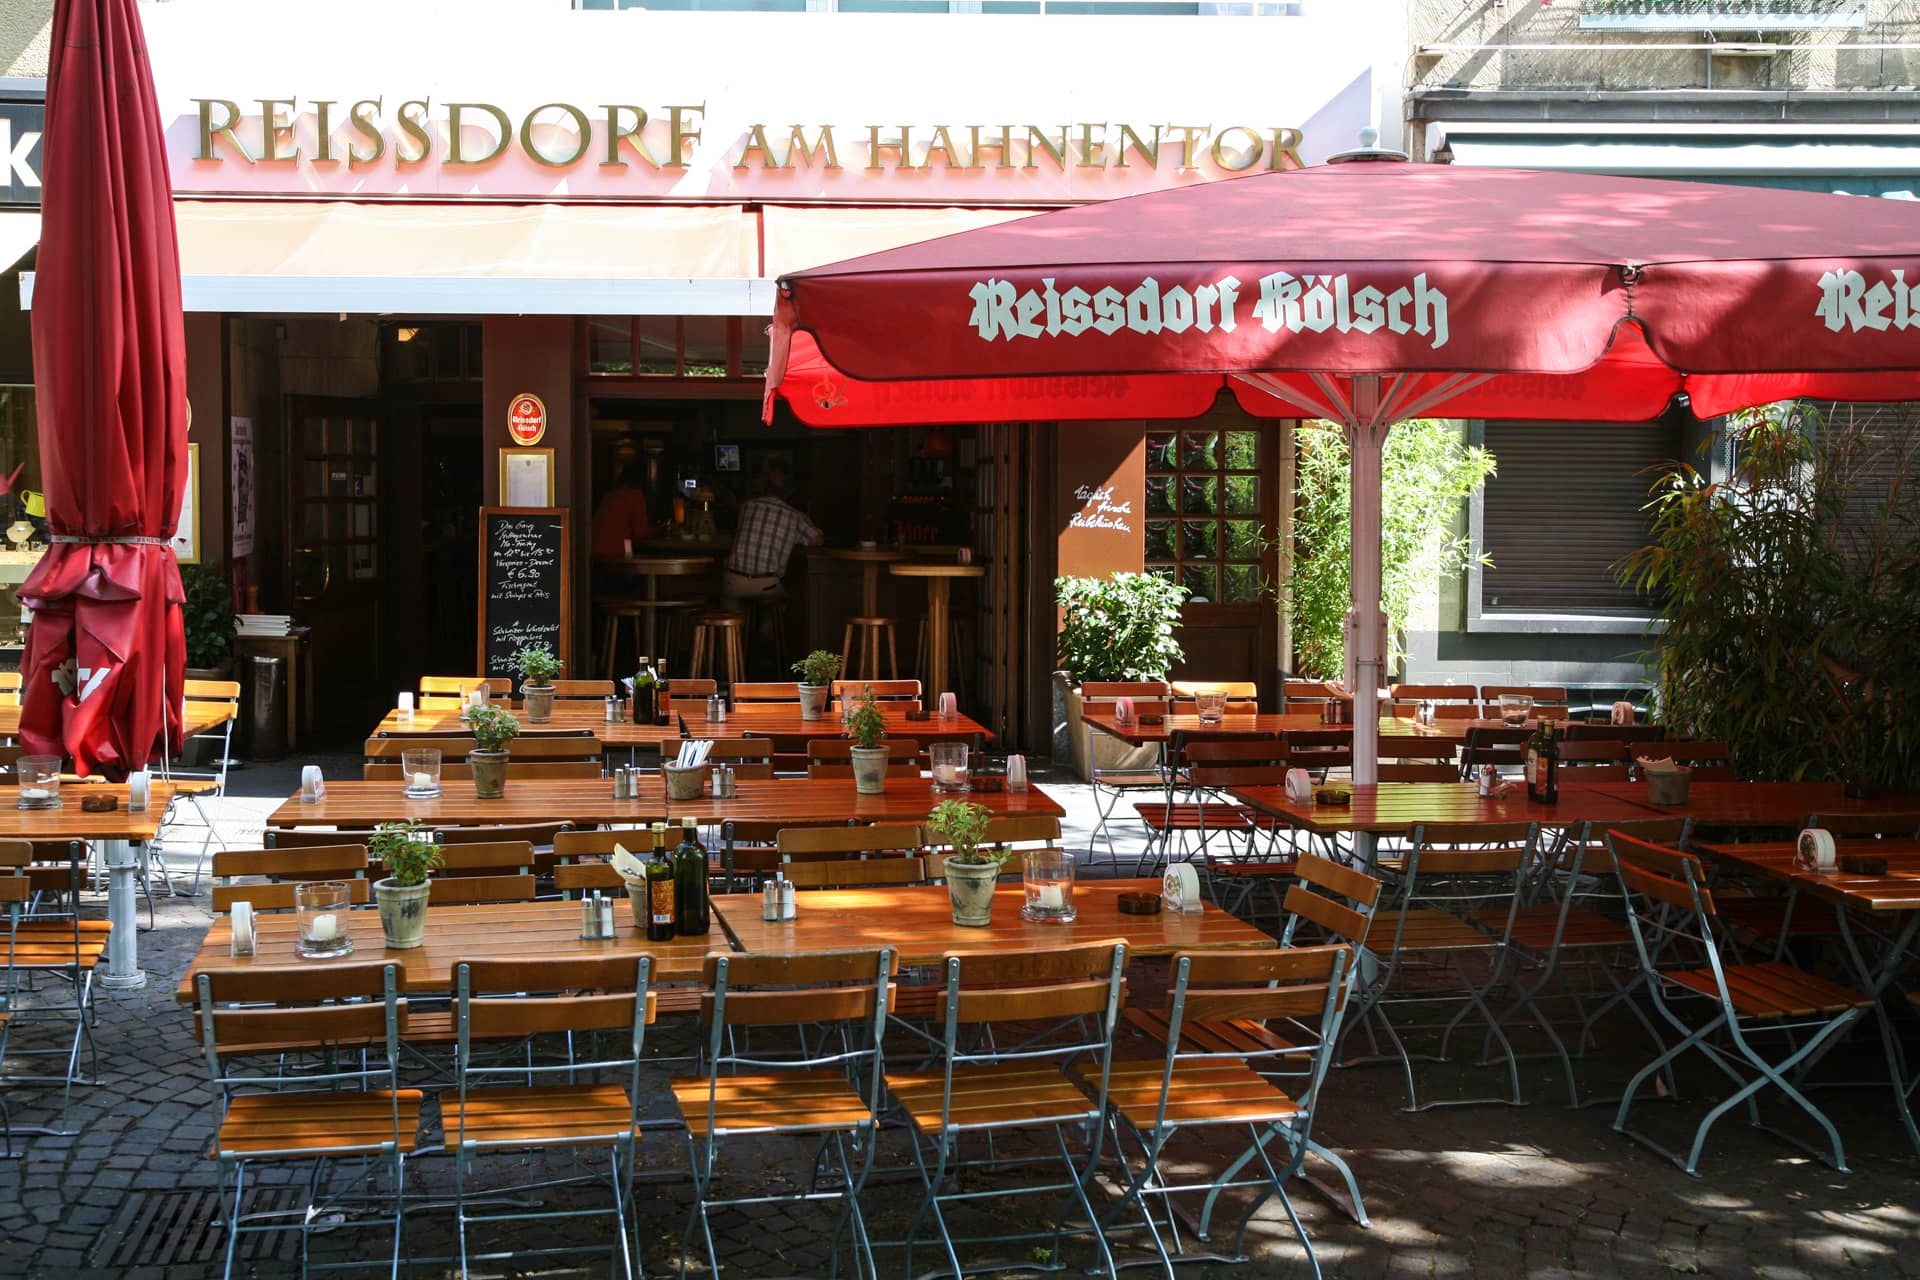 (c) Reissdorf-amhahnentor.de